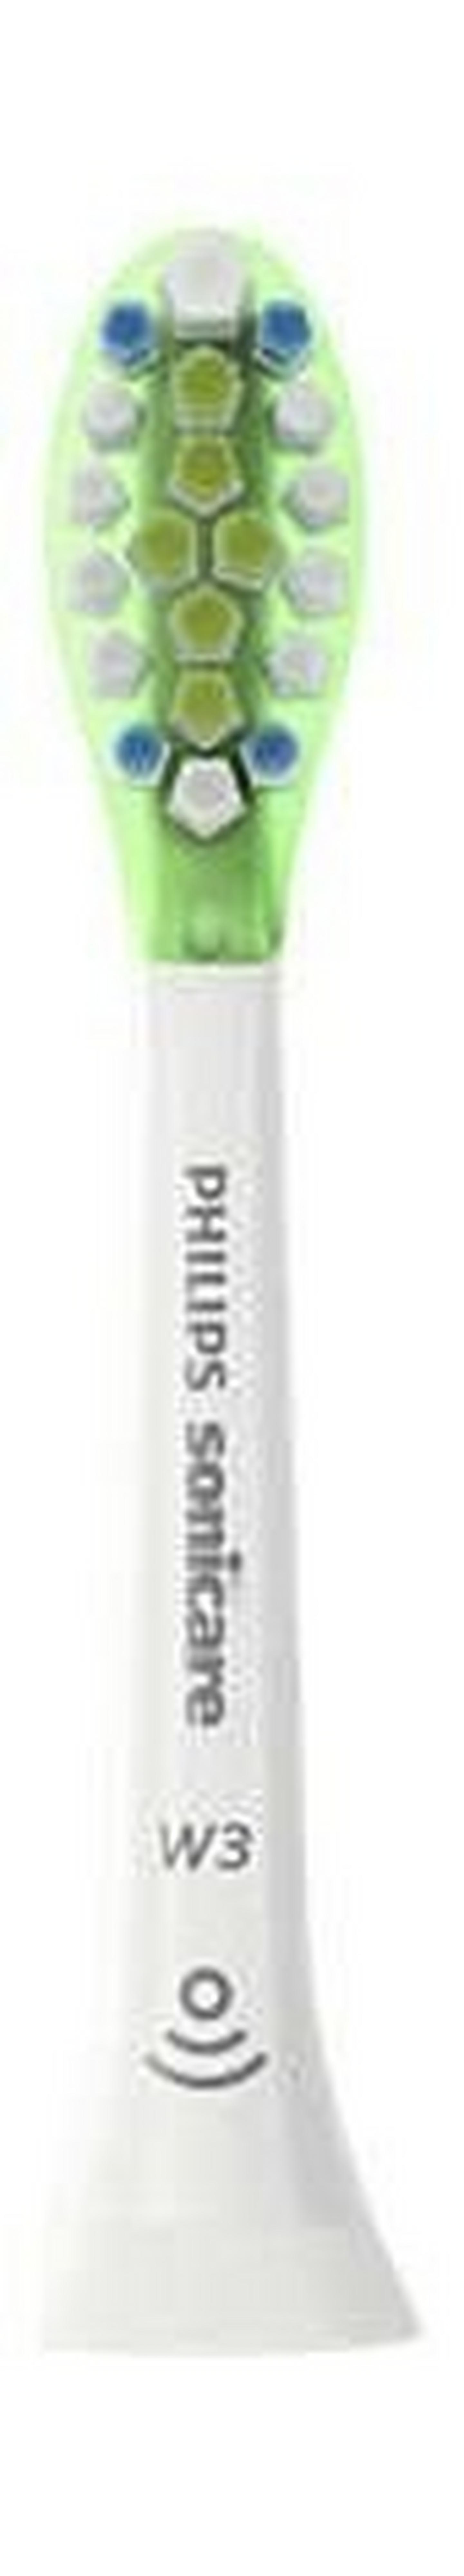 Philips Sonicare W3 Premium White Standard Sonic Toothbrush Heads - HX9062/17